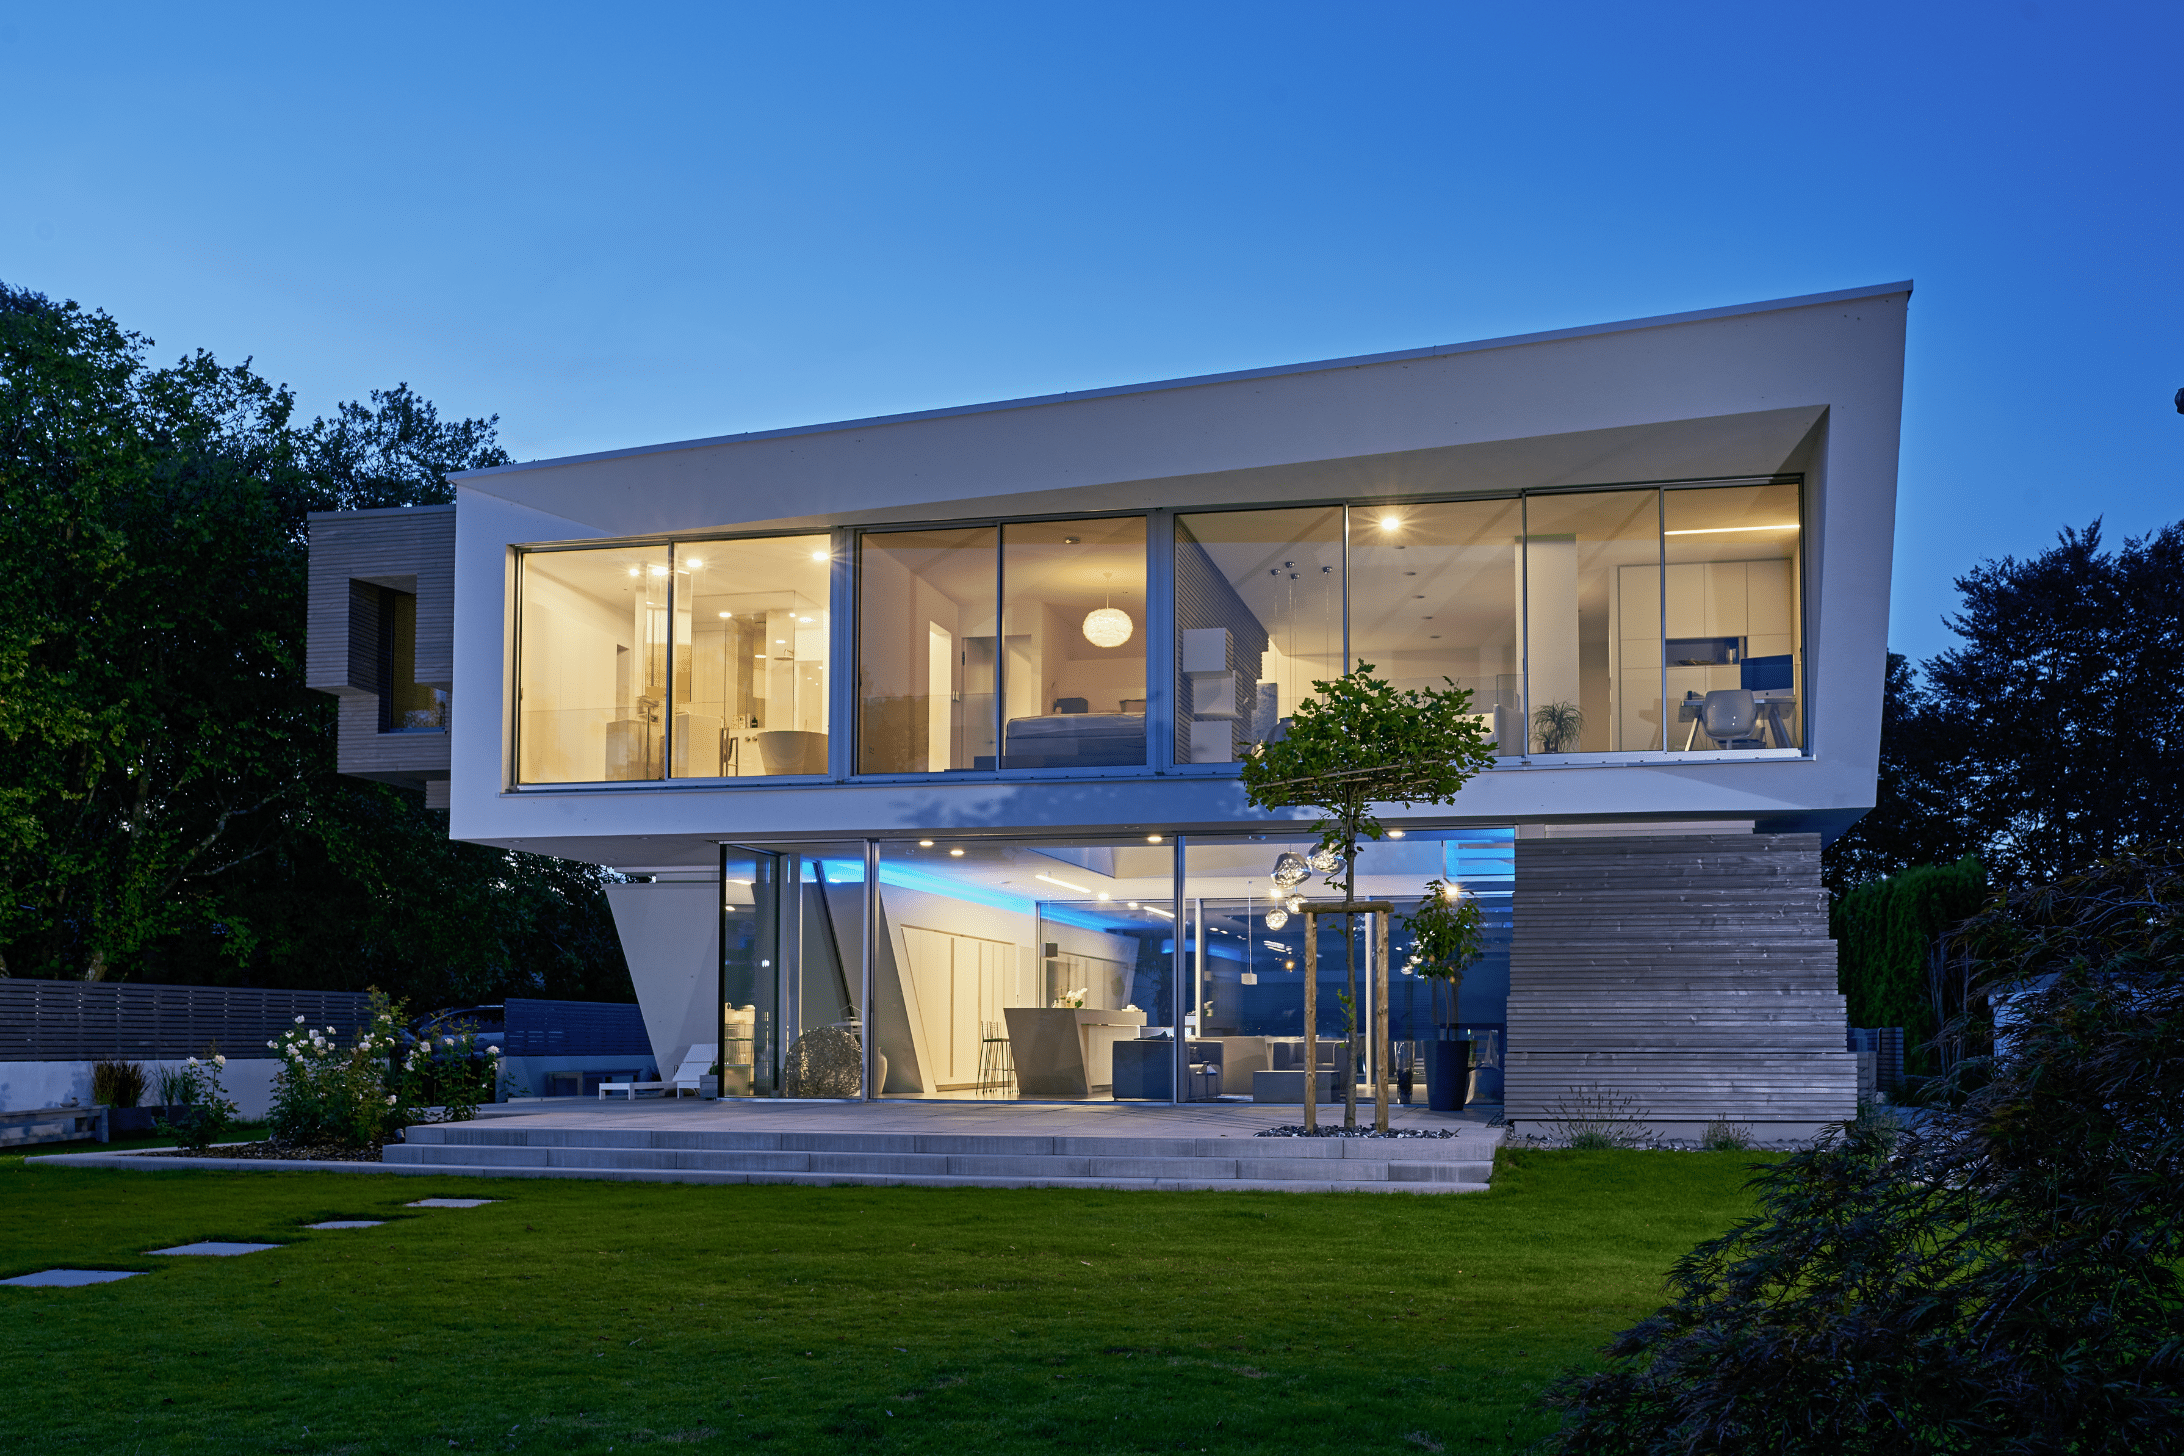 Solarlux zeigt die Villa Cero am Bodensee bei Nacht, wodurch man die blaue Beleuchtung auf der Terrasse und der Glasfaltwand gut erkennen kann.